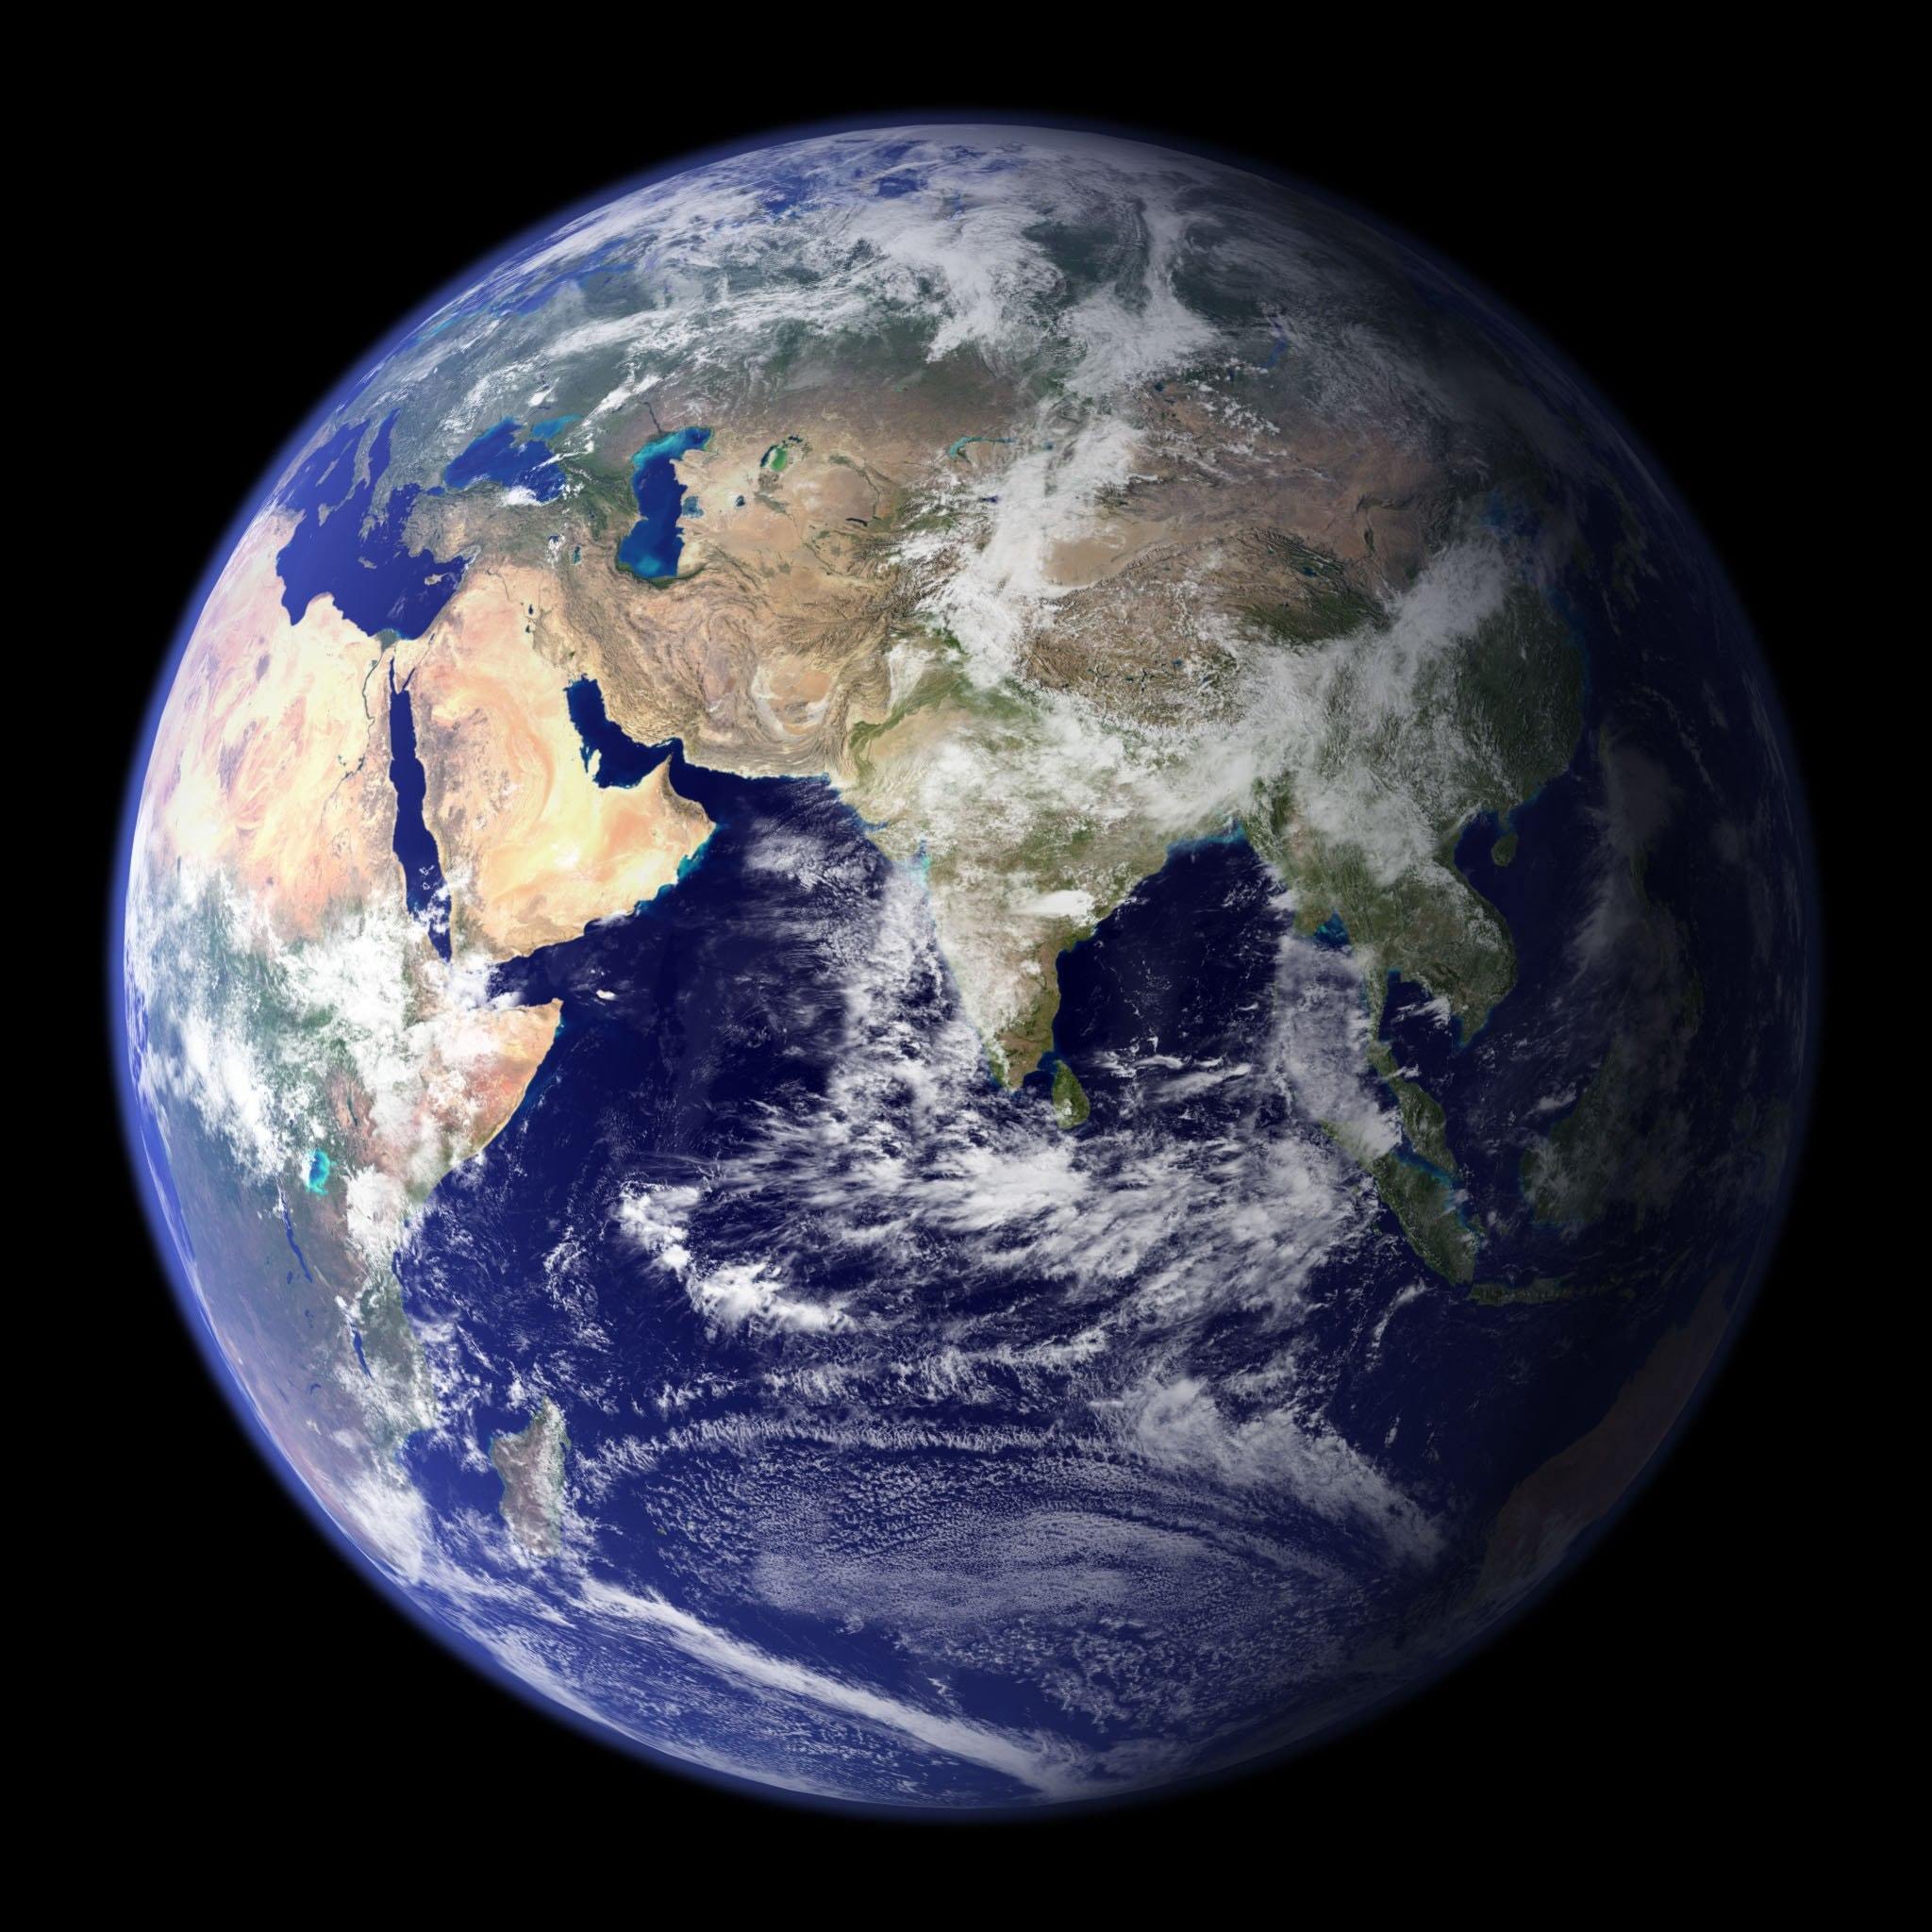 Imagen del planeta Tierra desde el espacio en la que se observa partes de Asia y África.